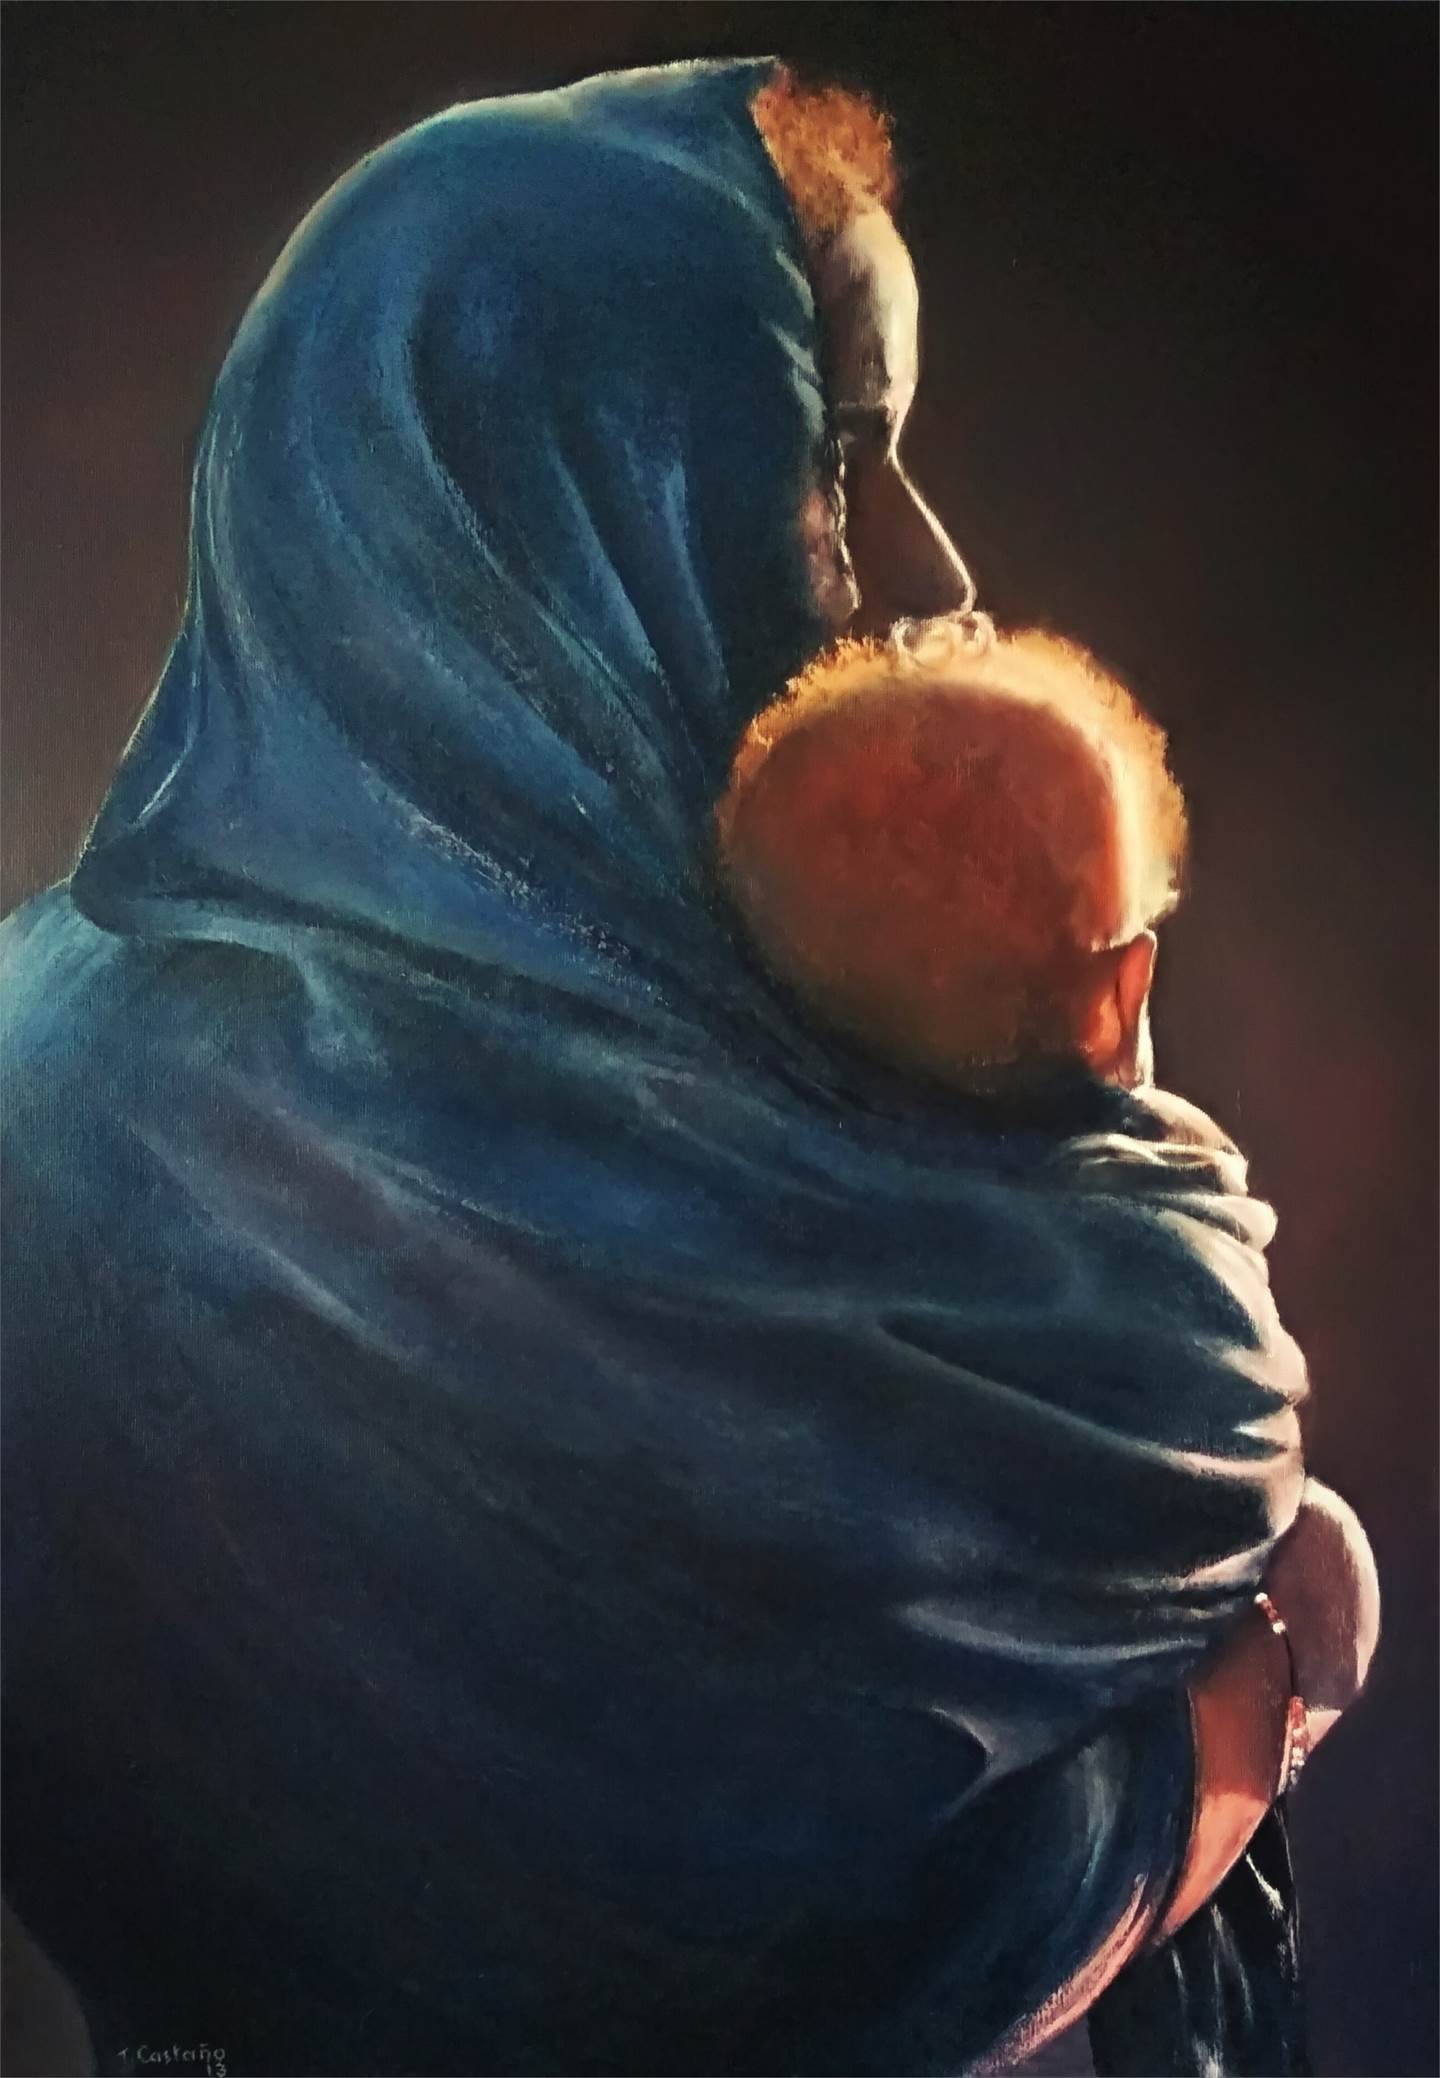 Mujer con niño al ponerse el sol., original   Painting by TOMAS CASTAÑO